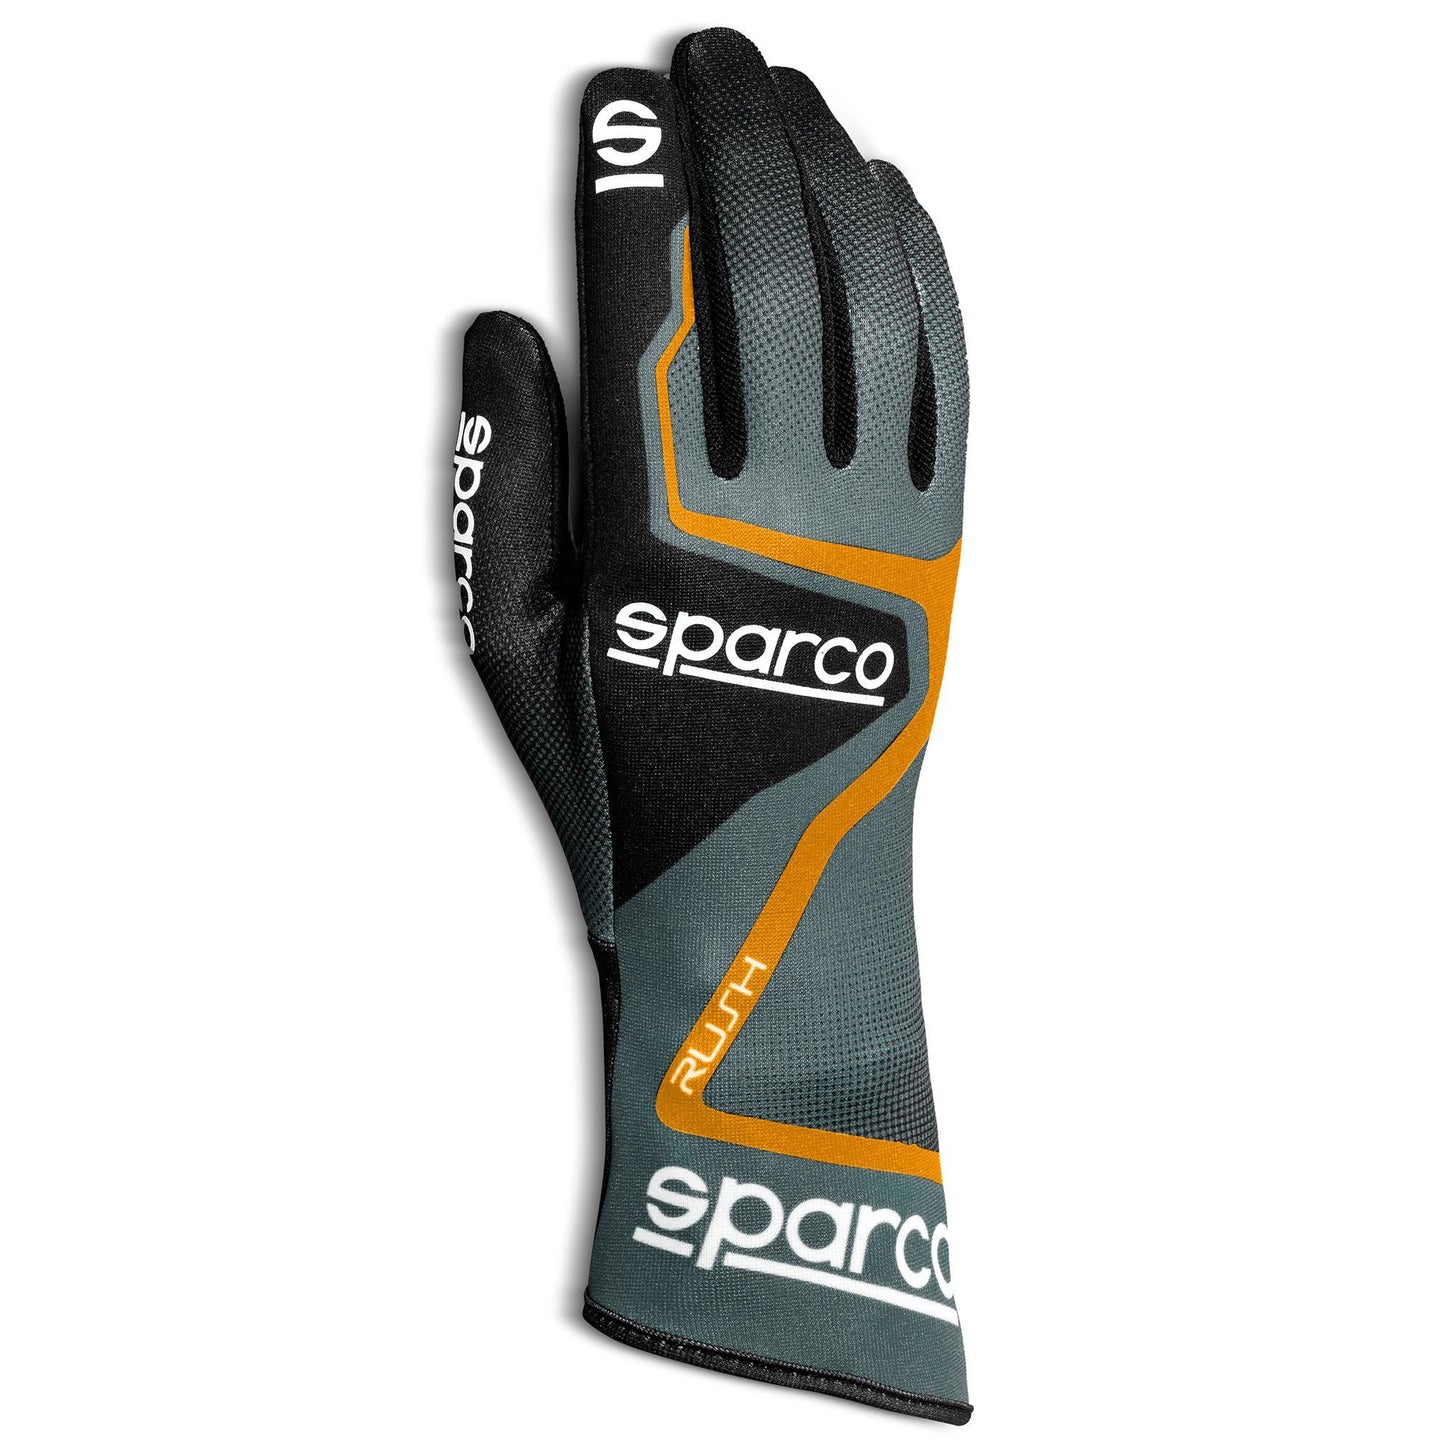 002556 Sparco Rush Kart Gloves